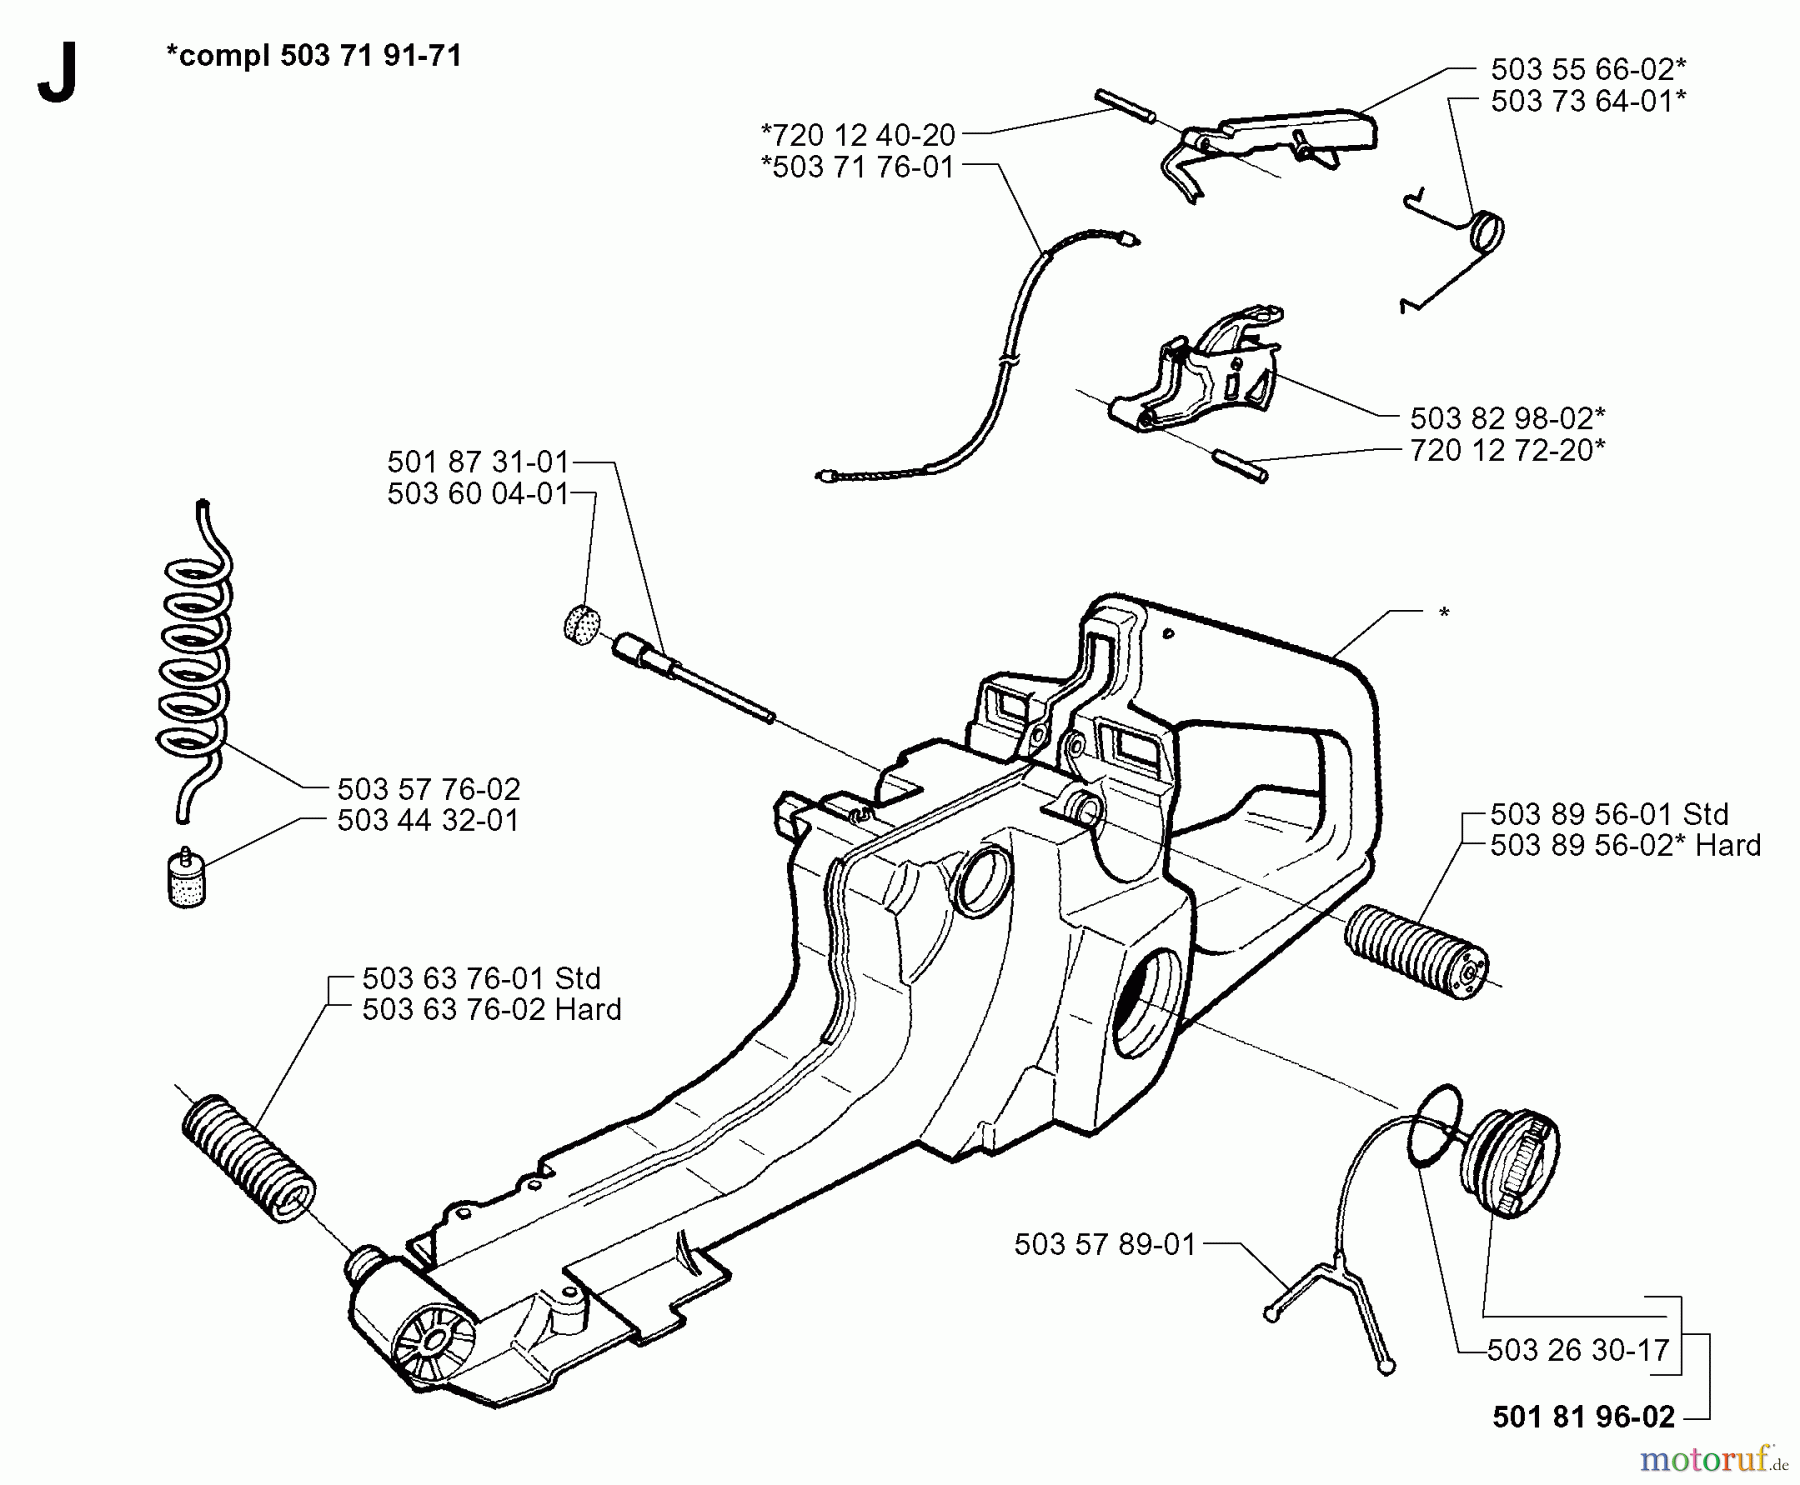  Jonsered Motorsägen 2063 - Jonsered Chainsaw (1997-11) FUEL TANK